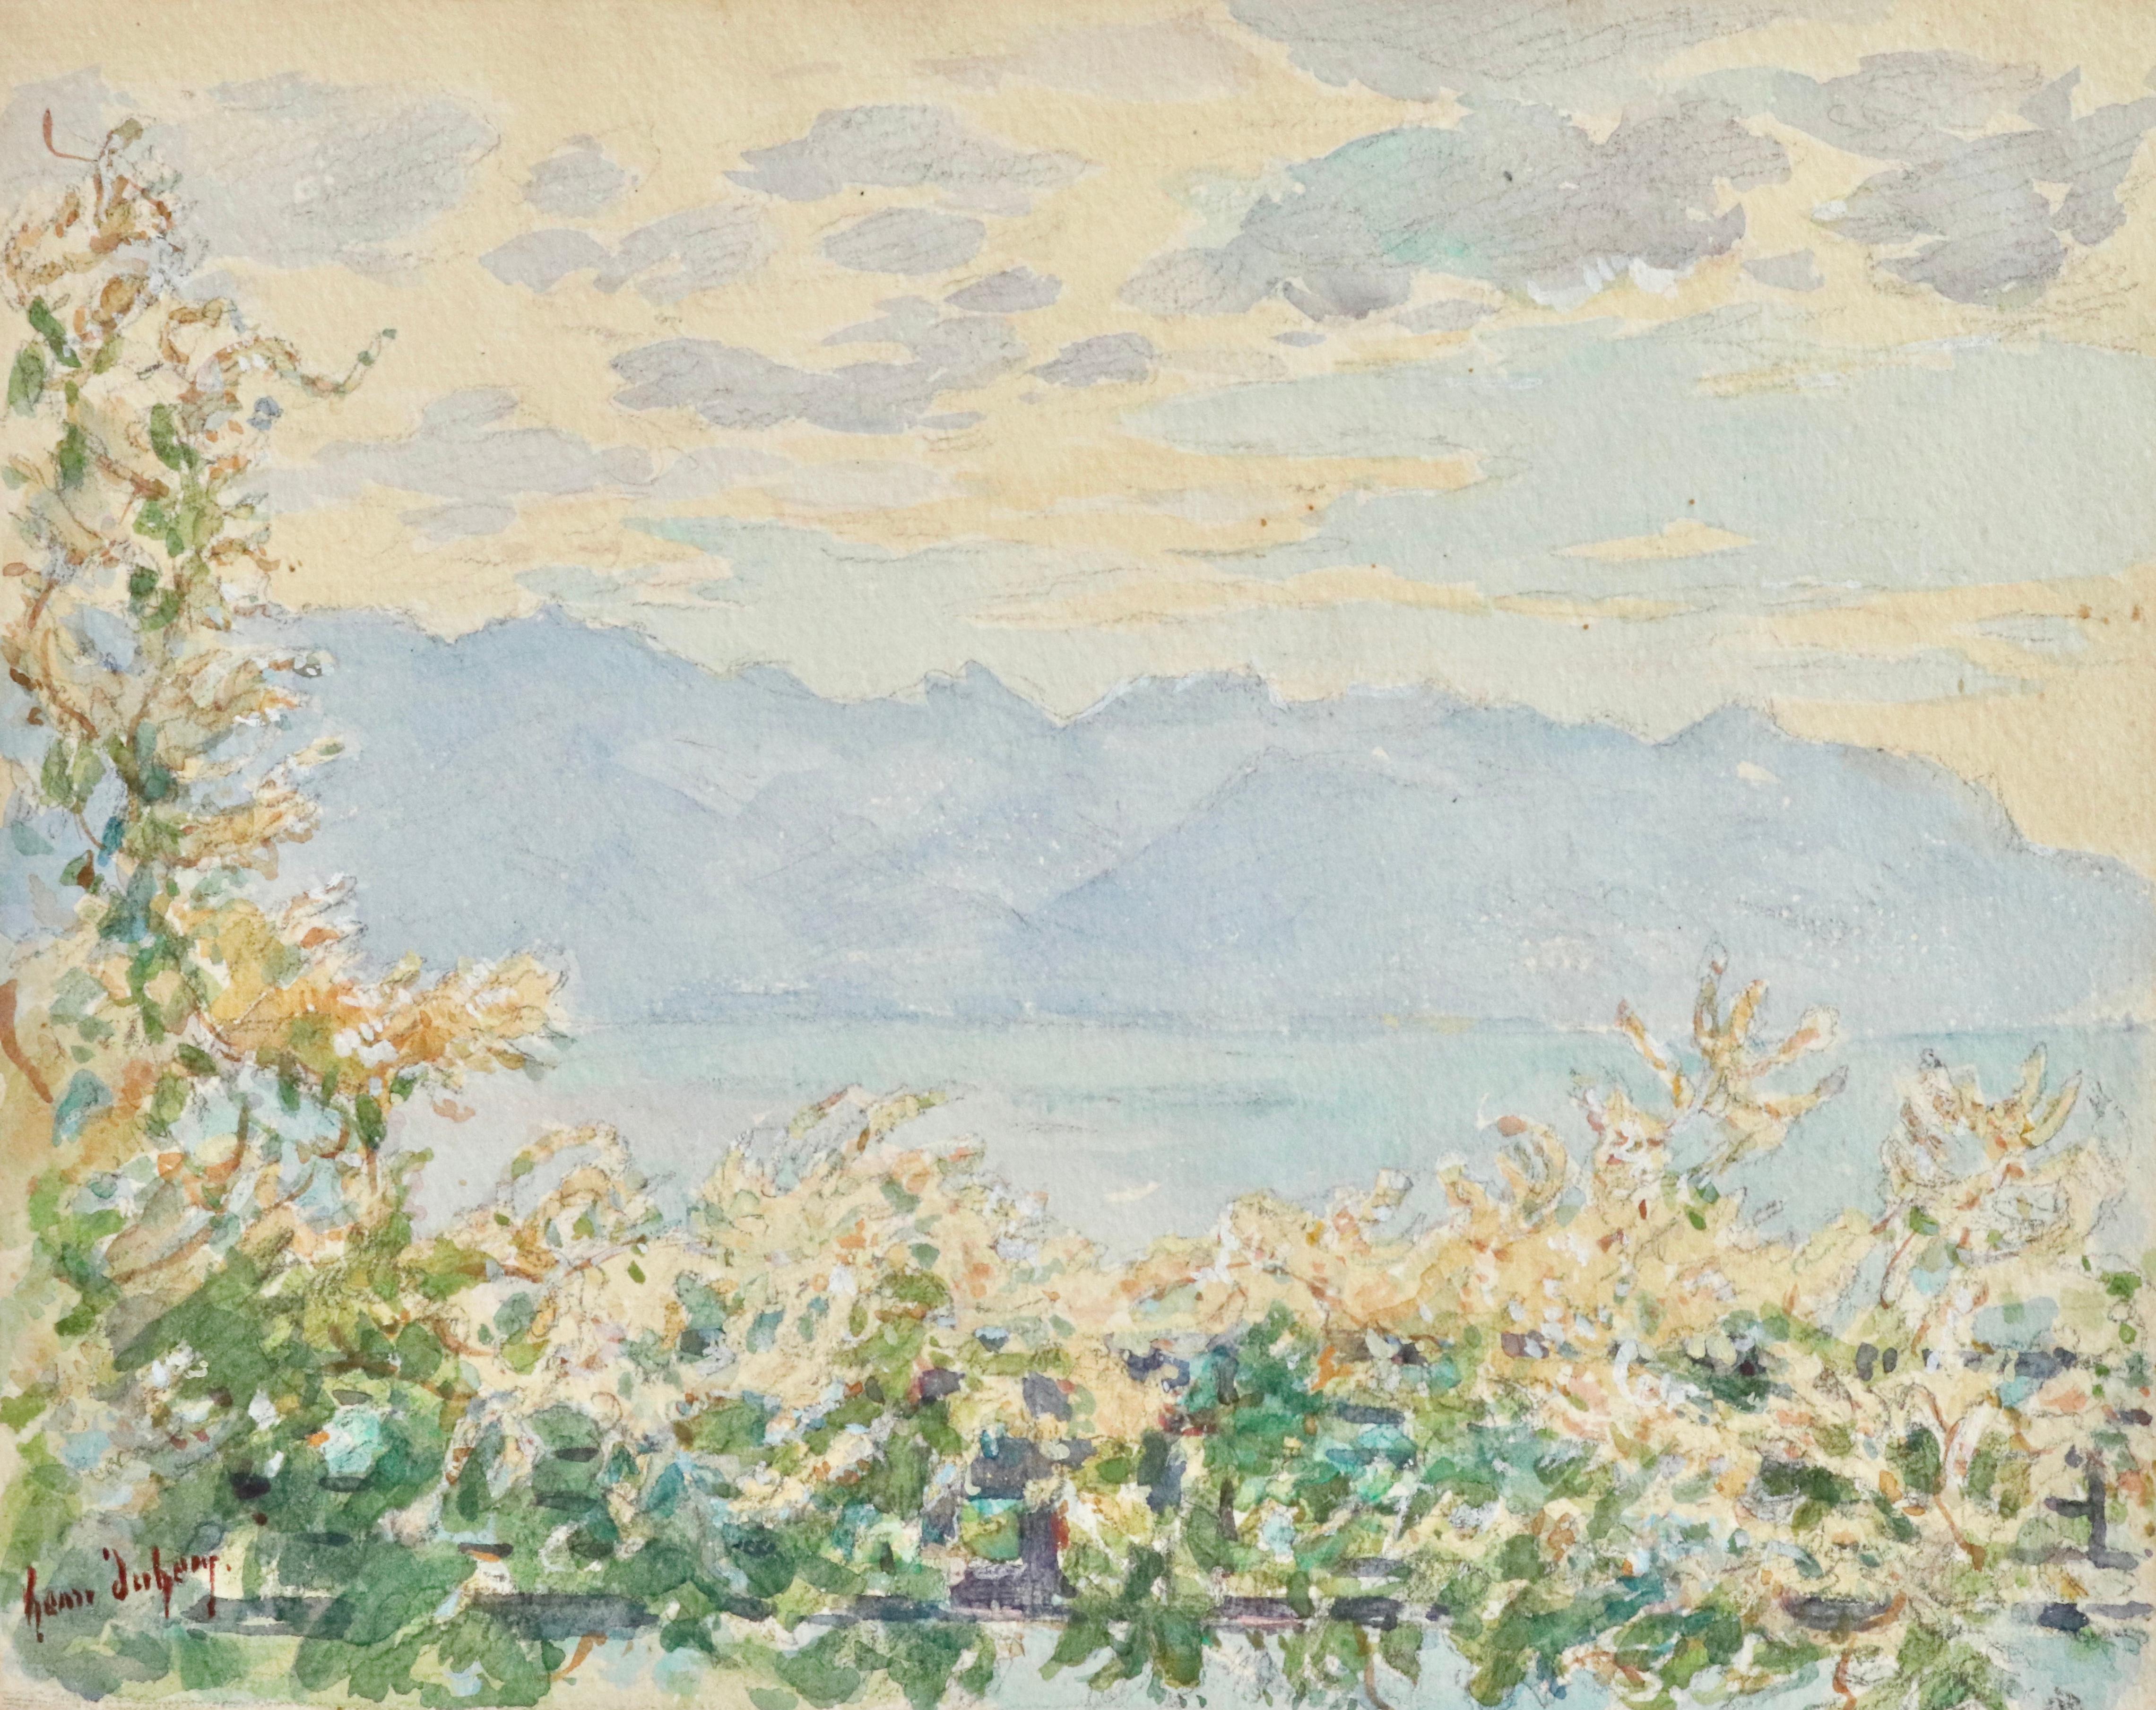 Henri Duhem Landscape Art – La Vue - La Genf - Impressionistisches Aquarell, Berg- und Seelandschaft H Duhem